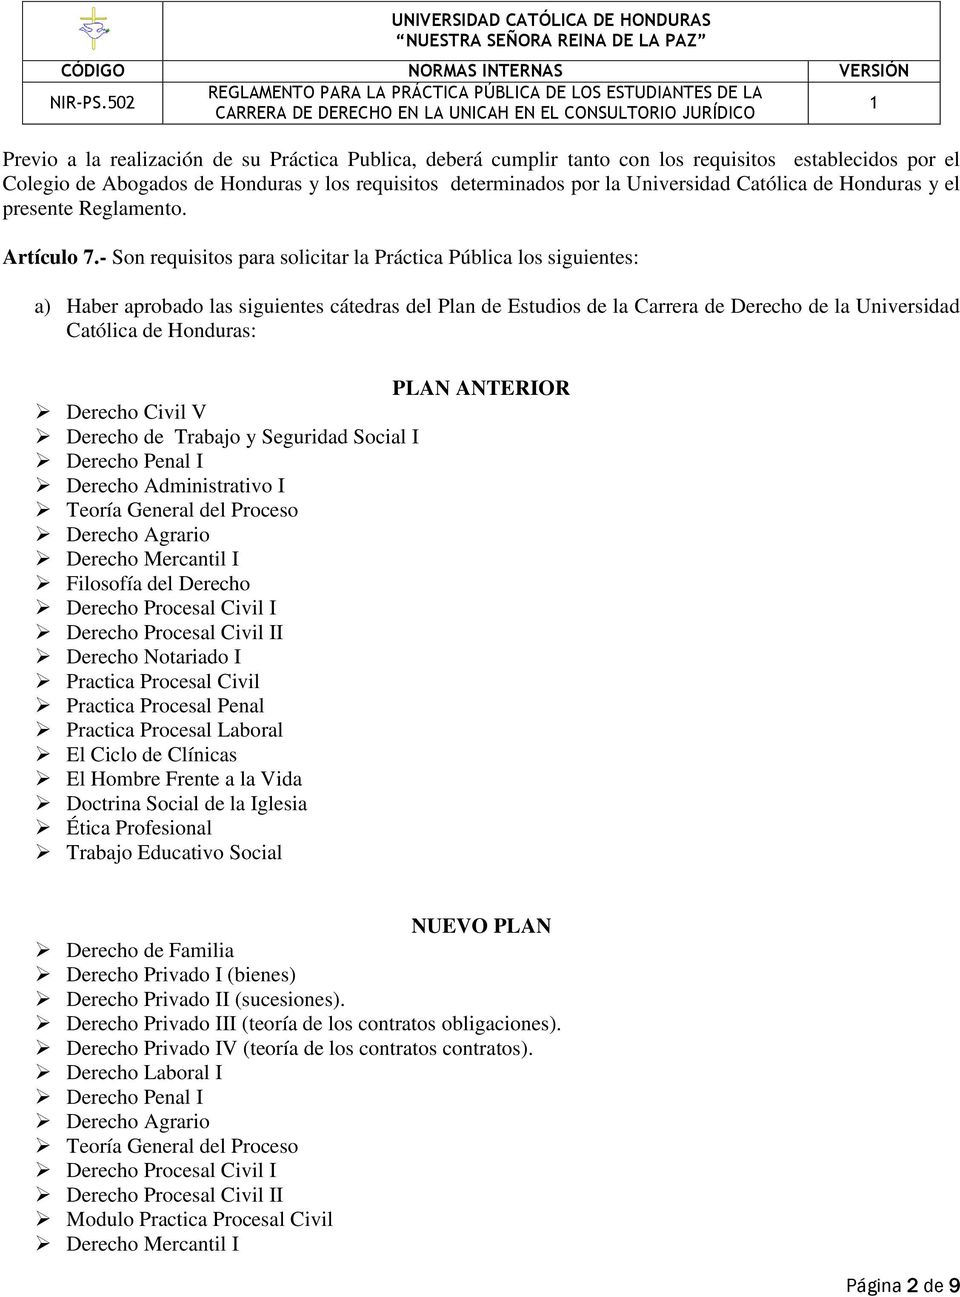 - Son requisitos para solicitar la Práctica Pública los siguientes: a) Haber aprobado las siguientes cátedras del Plan de Estudios de la Carrera de Derecho de la Universidad Católica de Honduras: